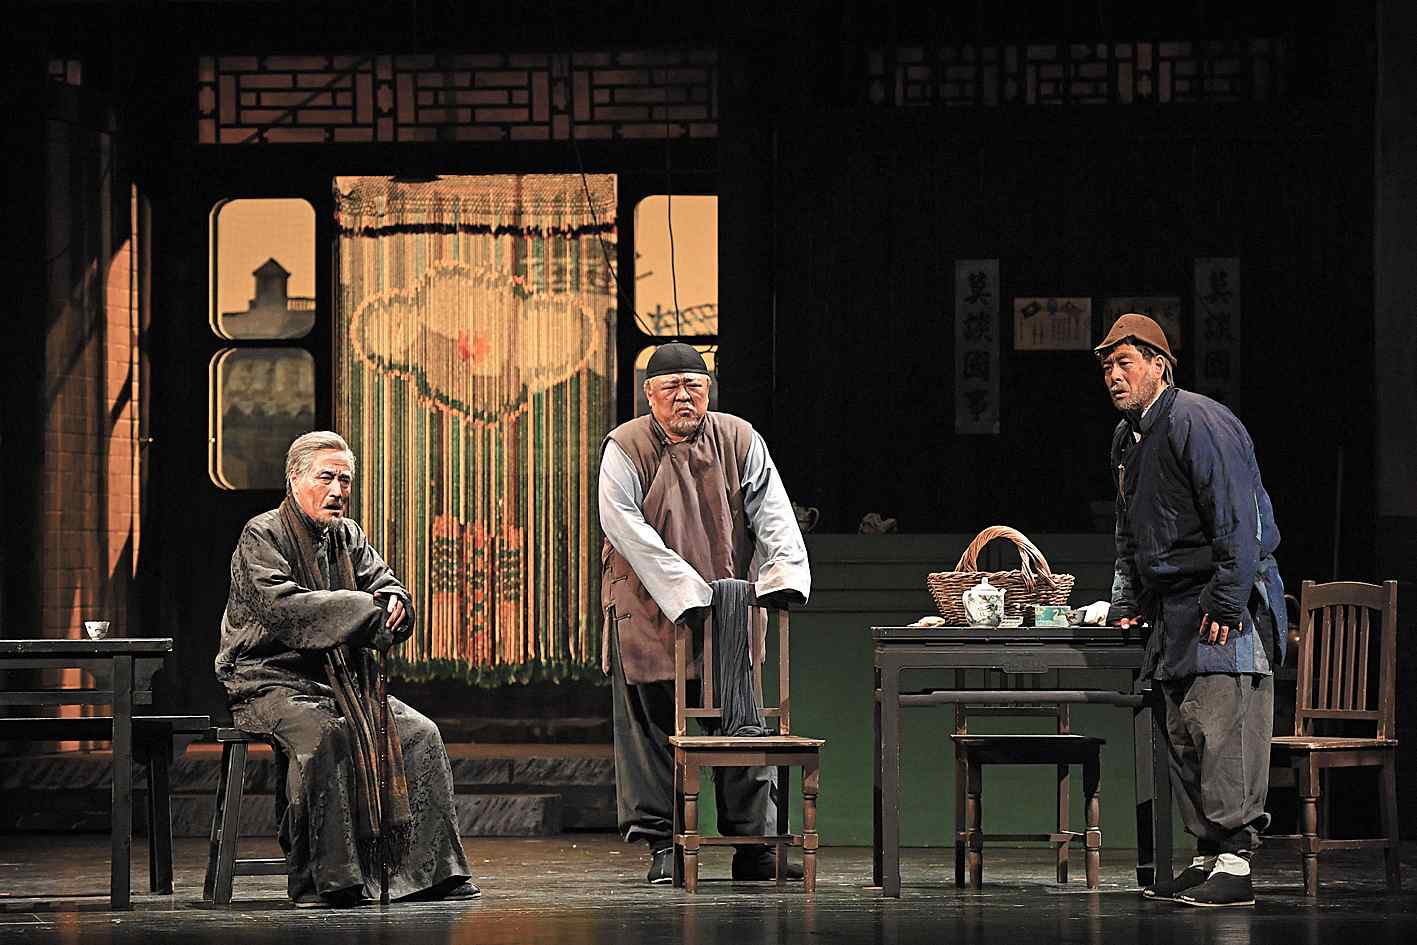 话剧《茶馆》已走过63个年头,演出700余场,在海外被誉为"东方舞台上的